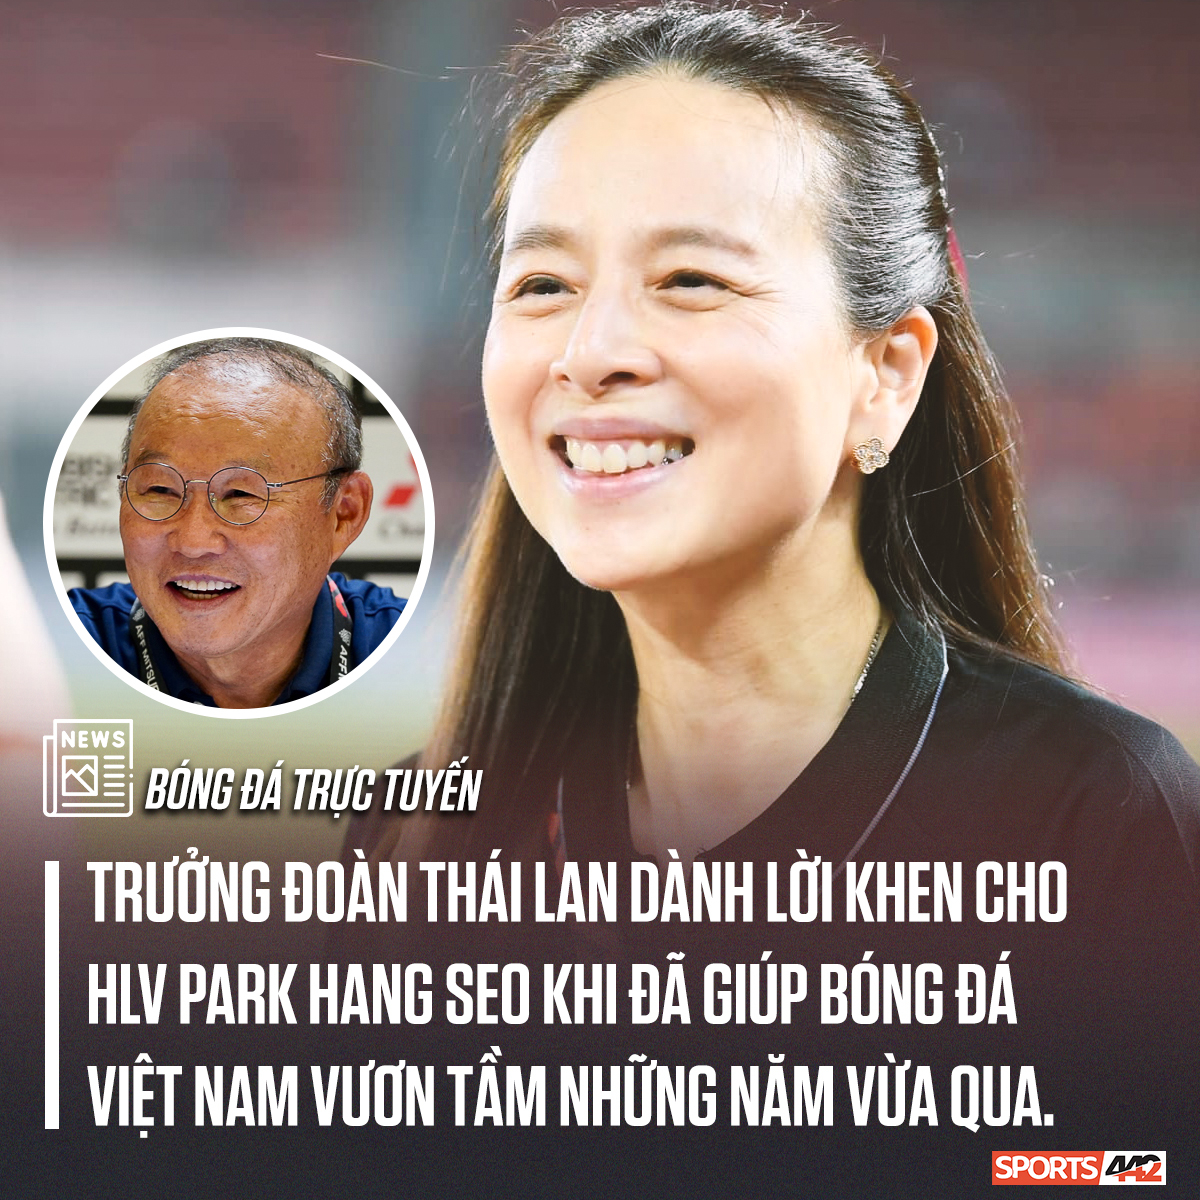 Trận đấu giữa Việt Nam và Thái Lan đúng là chung kết trong mơ